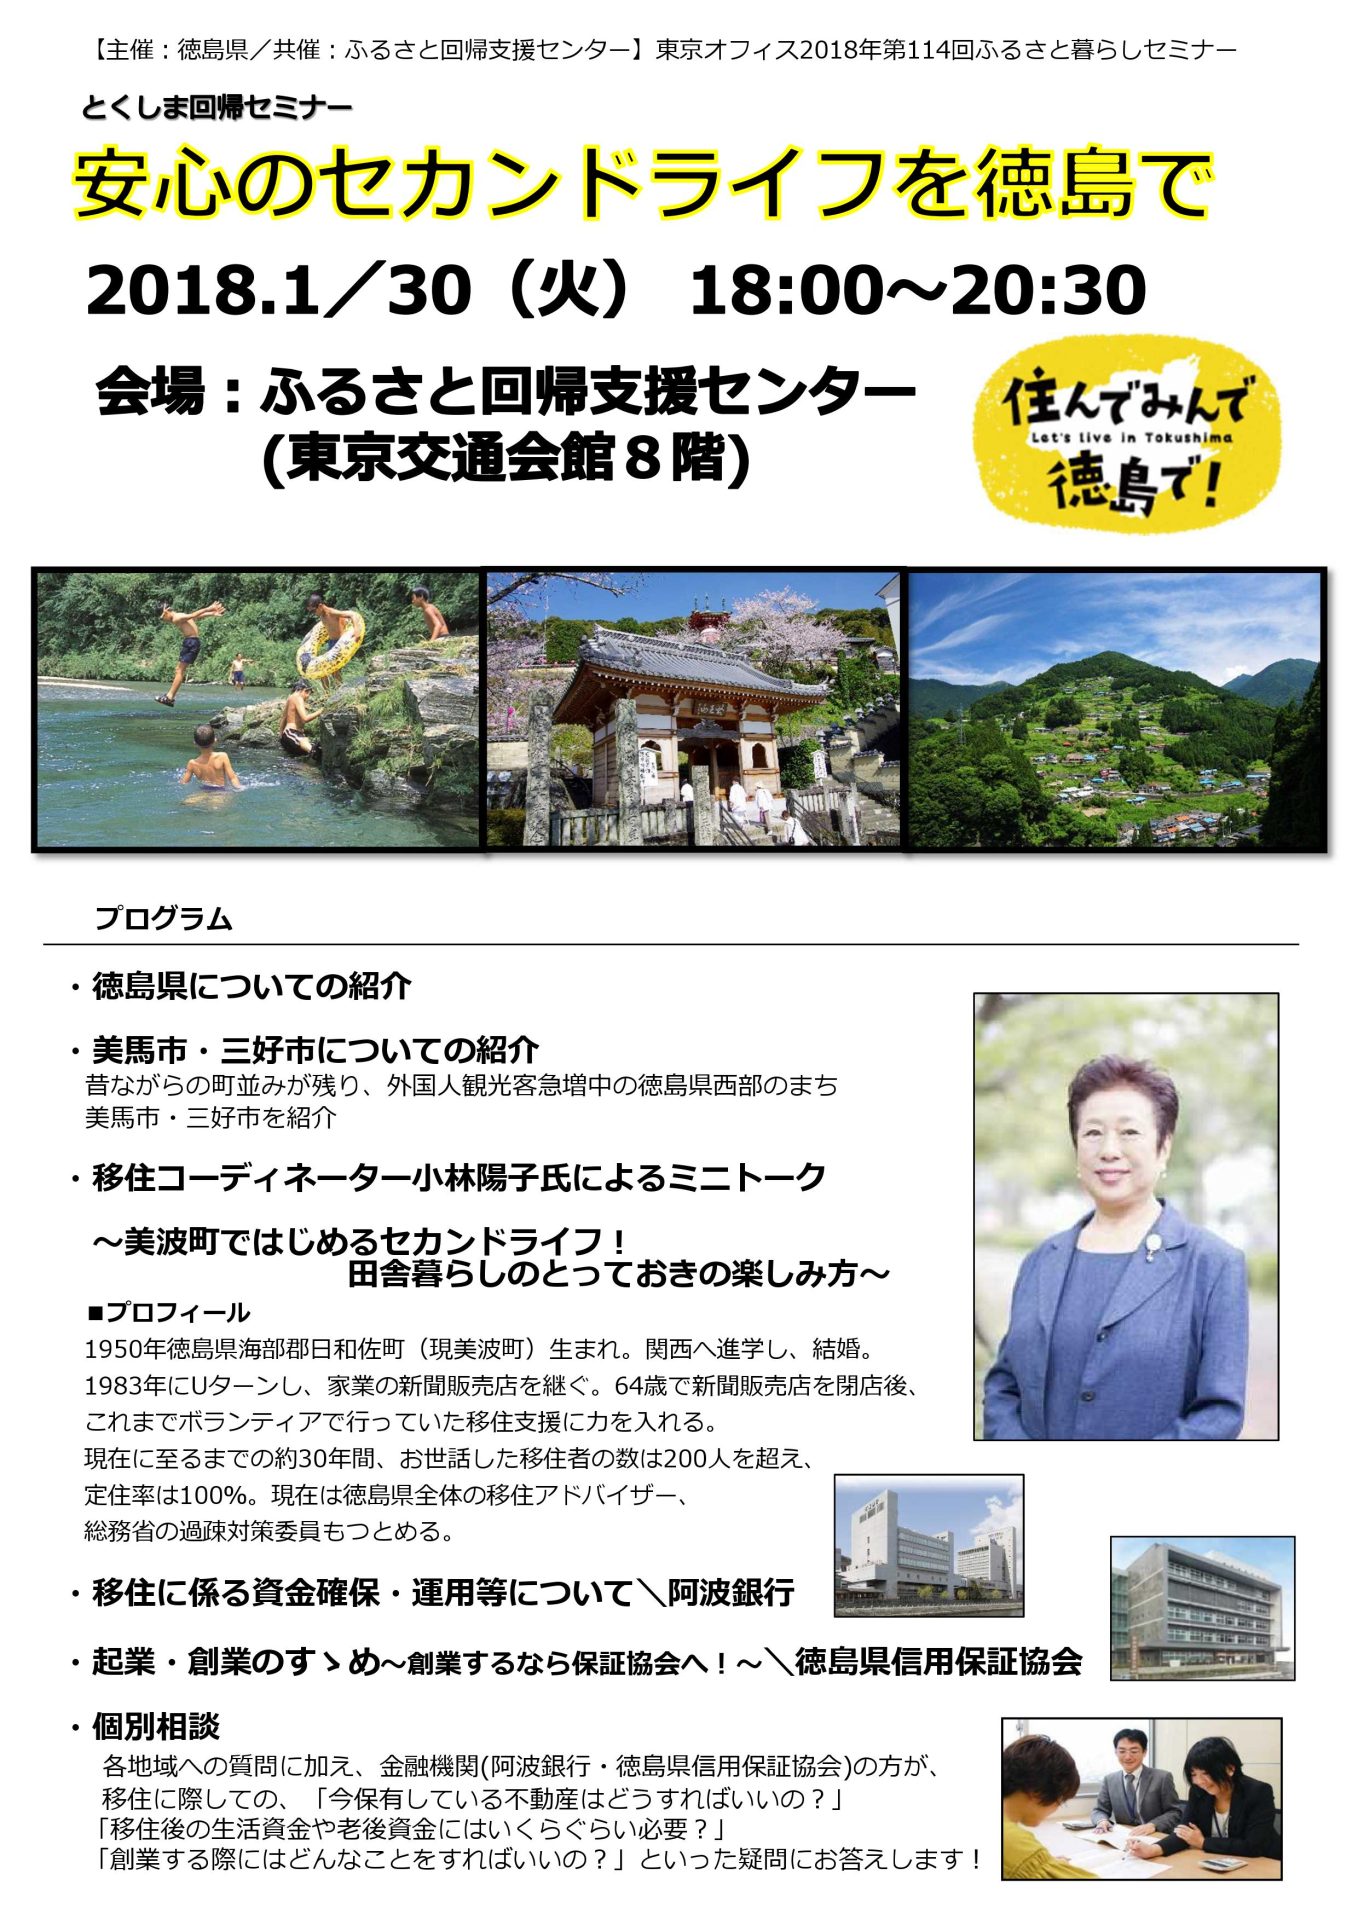 安心のセカンドライフを徳島で | 移住関連イベント情報